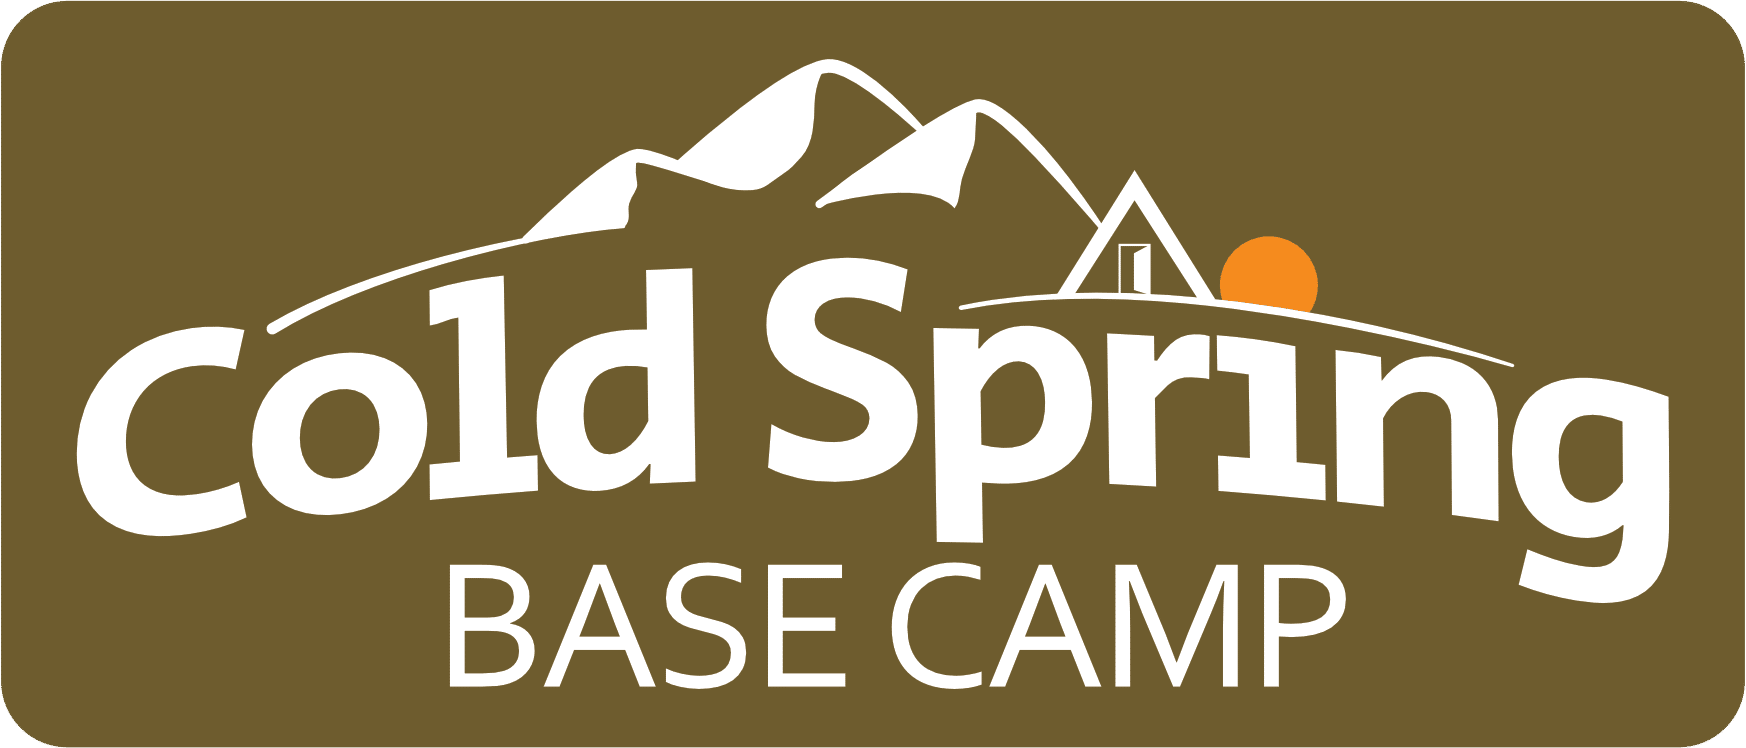 Cold Spring Base Camp